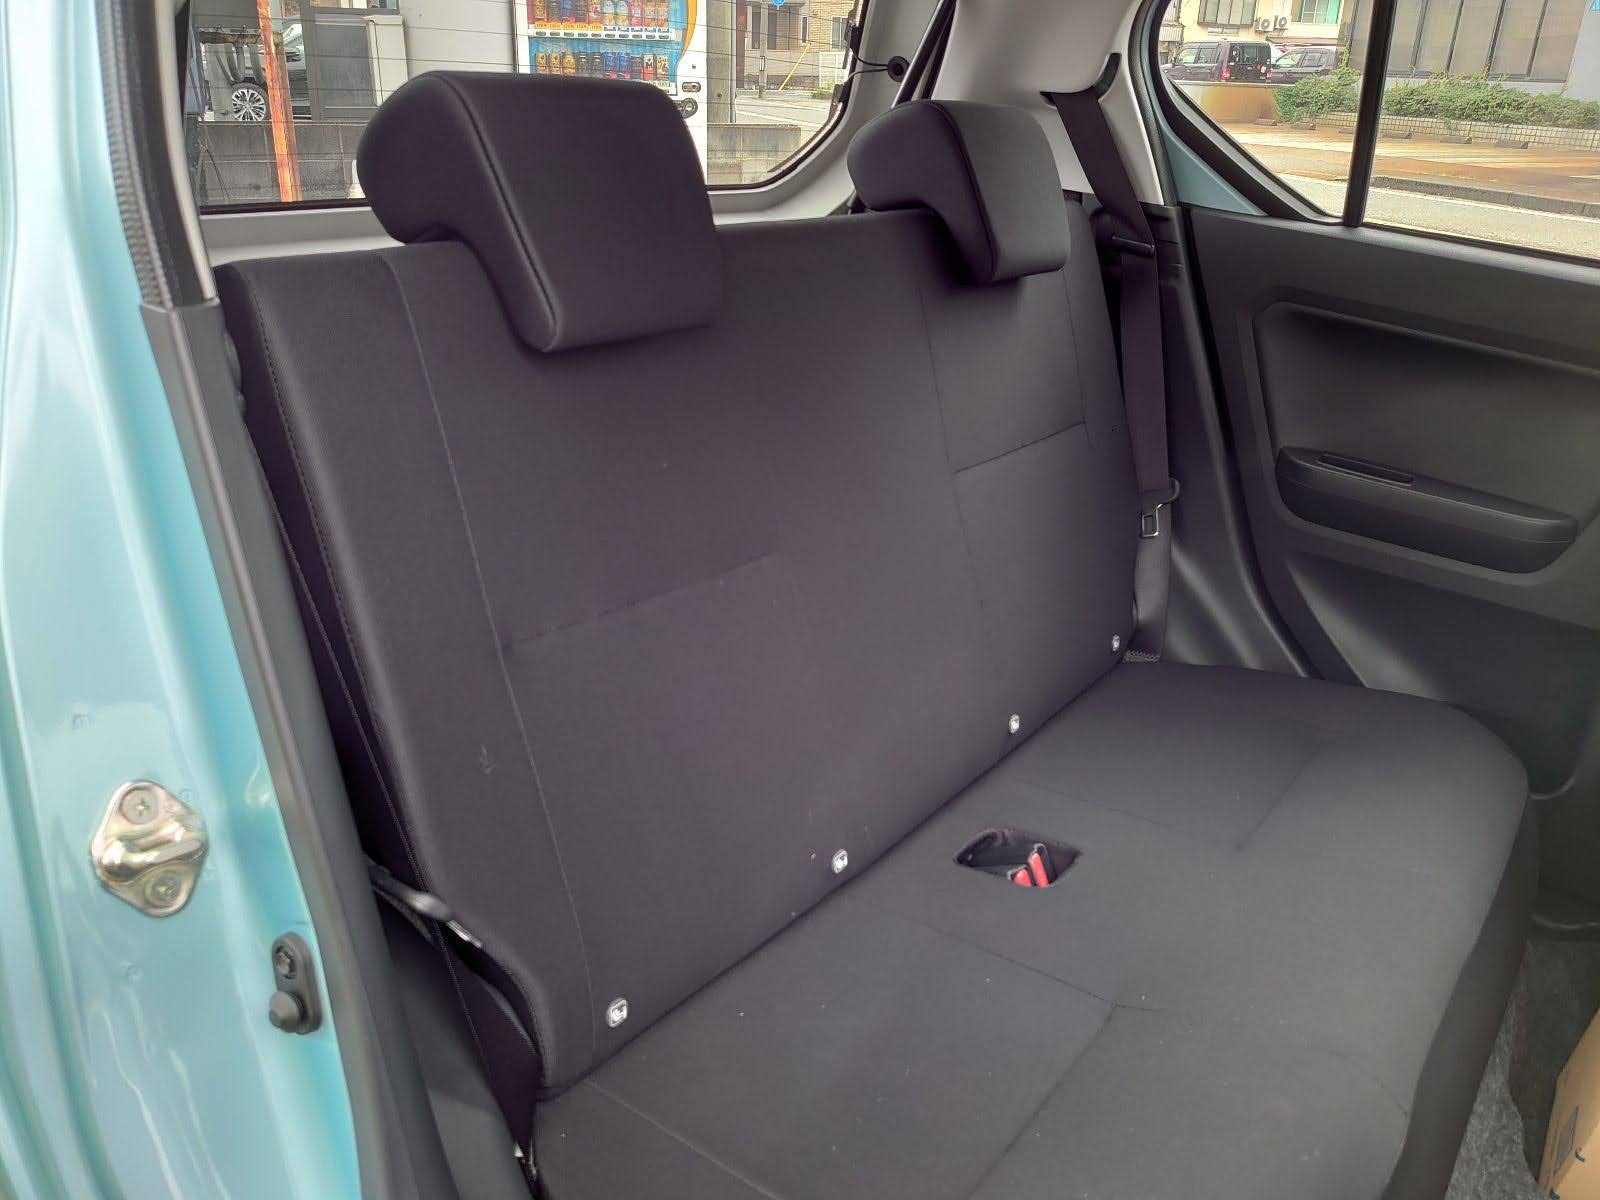 Daihatsu e:S back seat